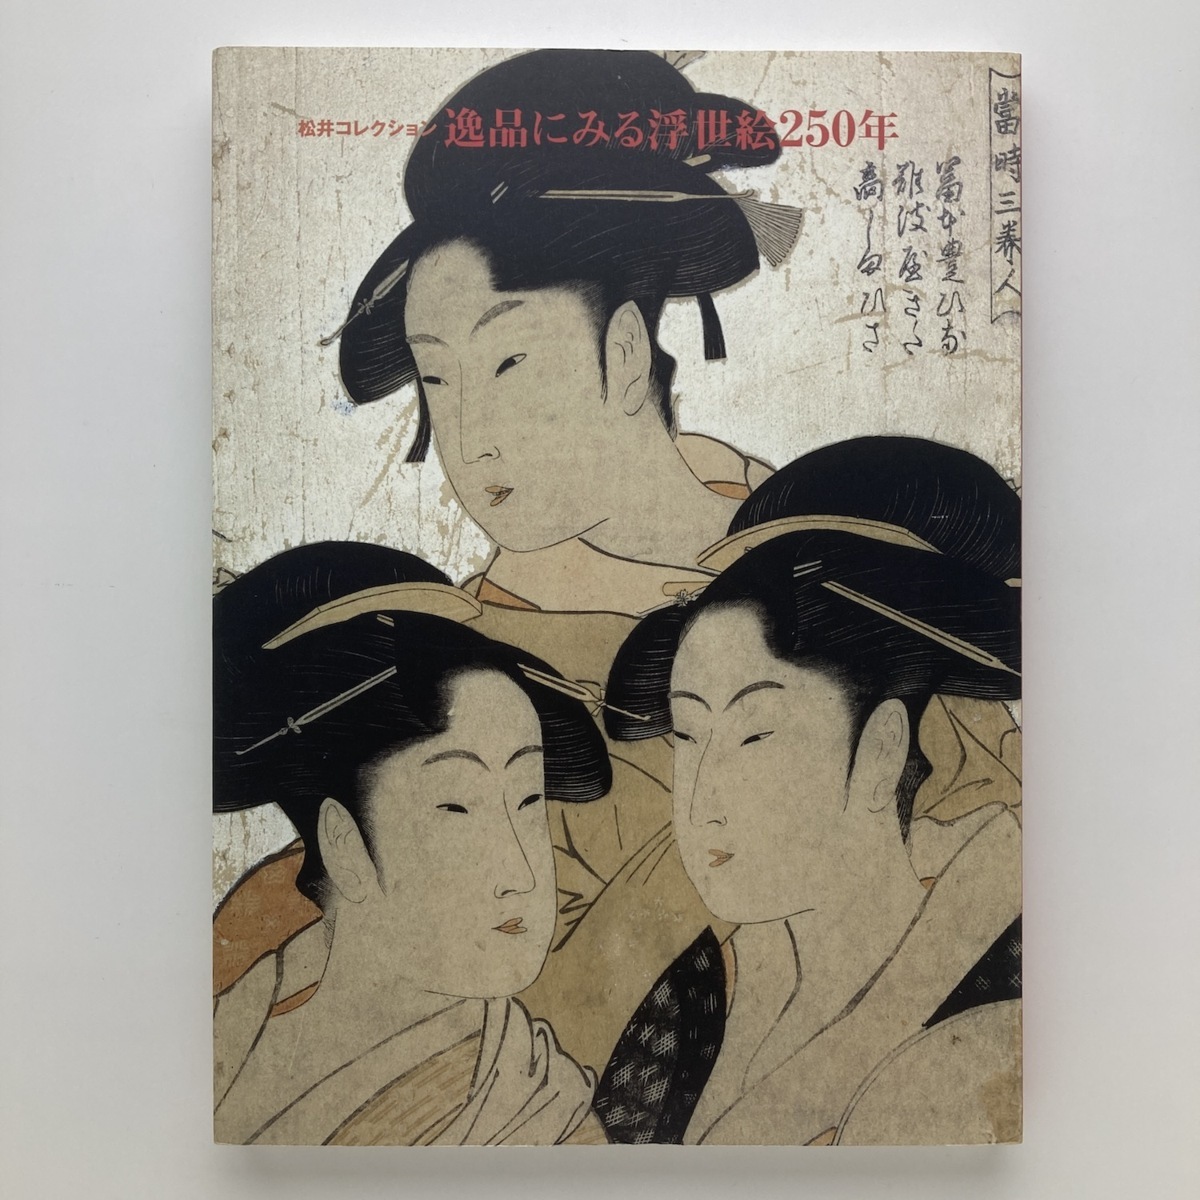 मात्सुई संग्रह: उत्कृष्ट कृतियों में उकियो-ई के 250 वर्ष, निहोन केइज़ाई शिम्बुन, इंक, ओडाक्यू कला संग्रहालय, 1998, यू-मेल, चित्रकारी, कला पुस्तक, संग्रह, सूची